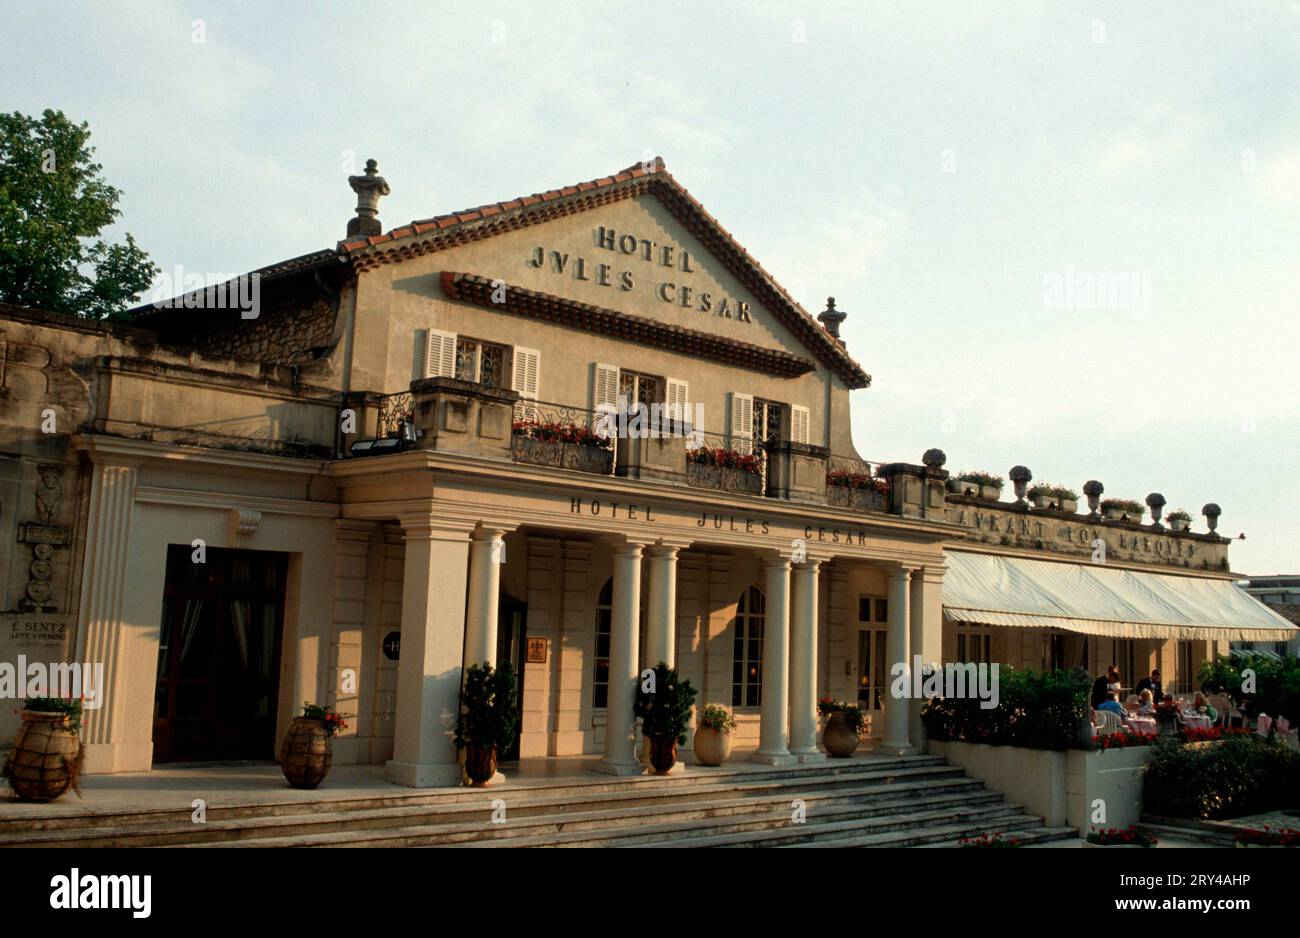 Hôtel "Jules Cesar" et/ou Restaurant "Lou marques", Arles, Bouches-du-Rhône, Provence, Sud de la France, paysage, format horizontal Banque D'Images